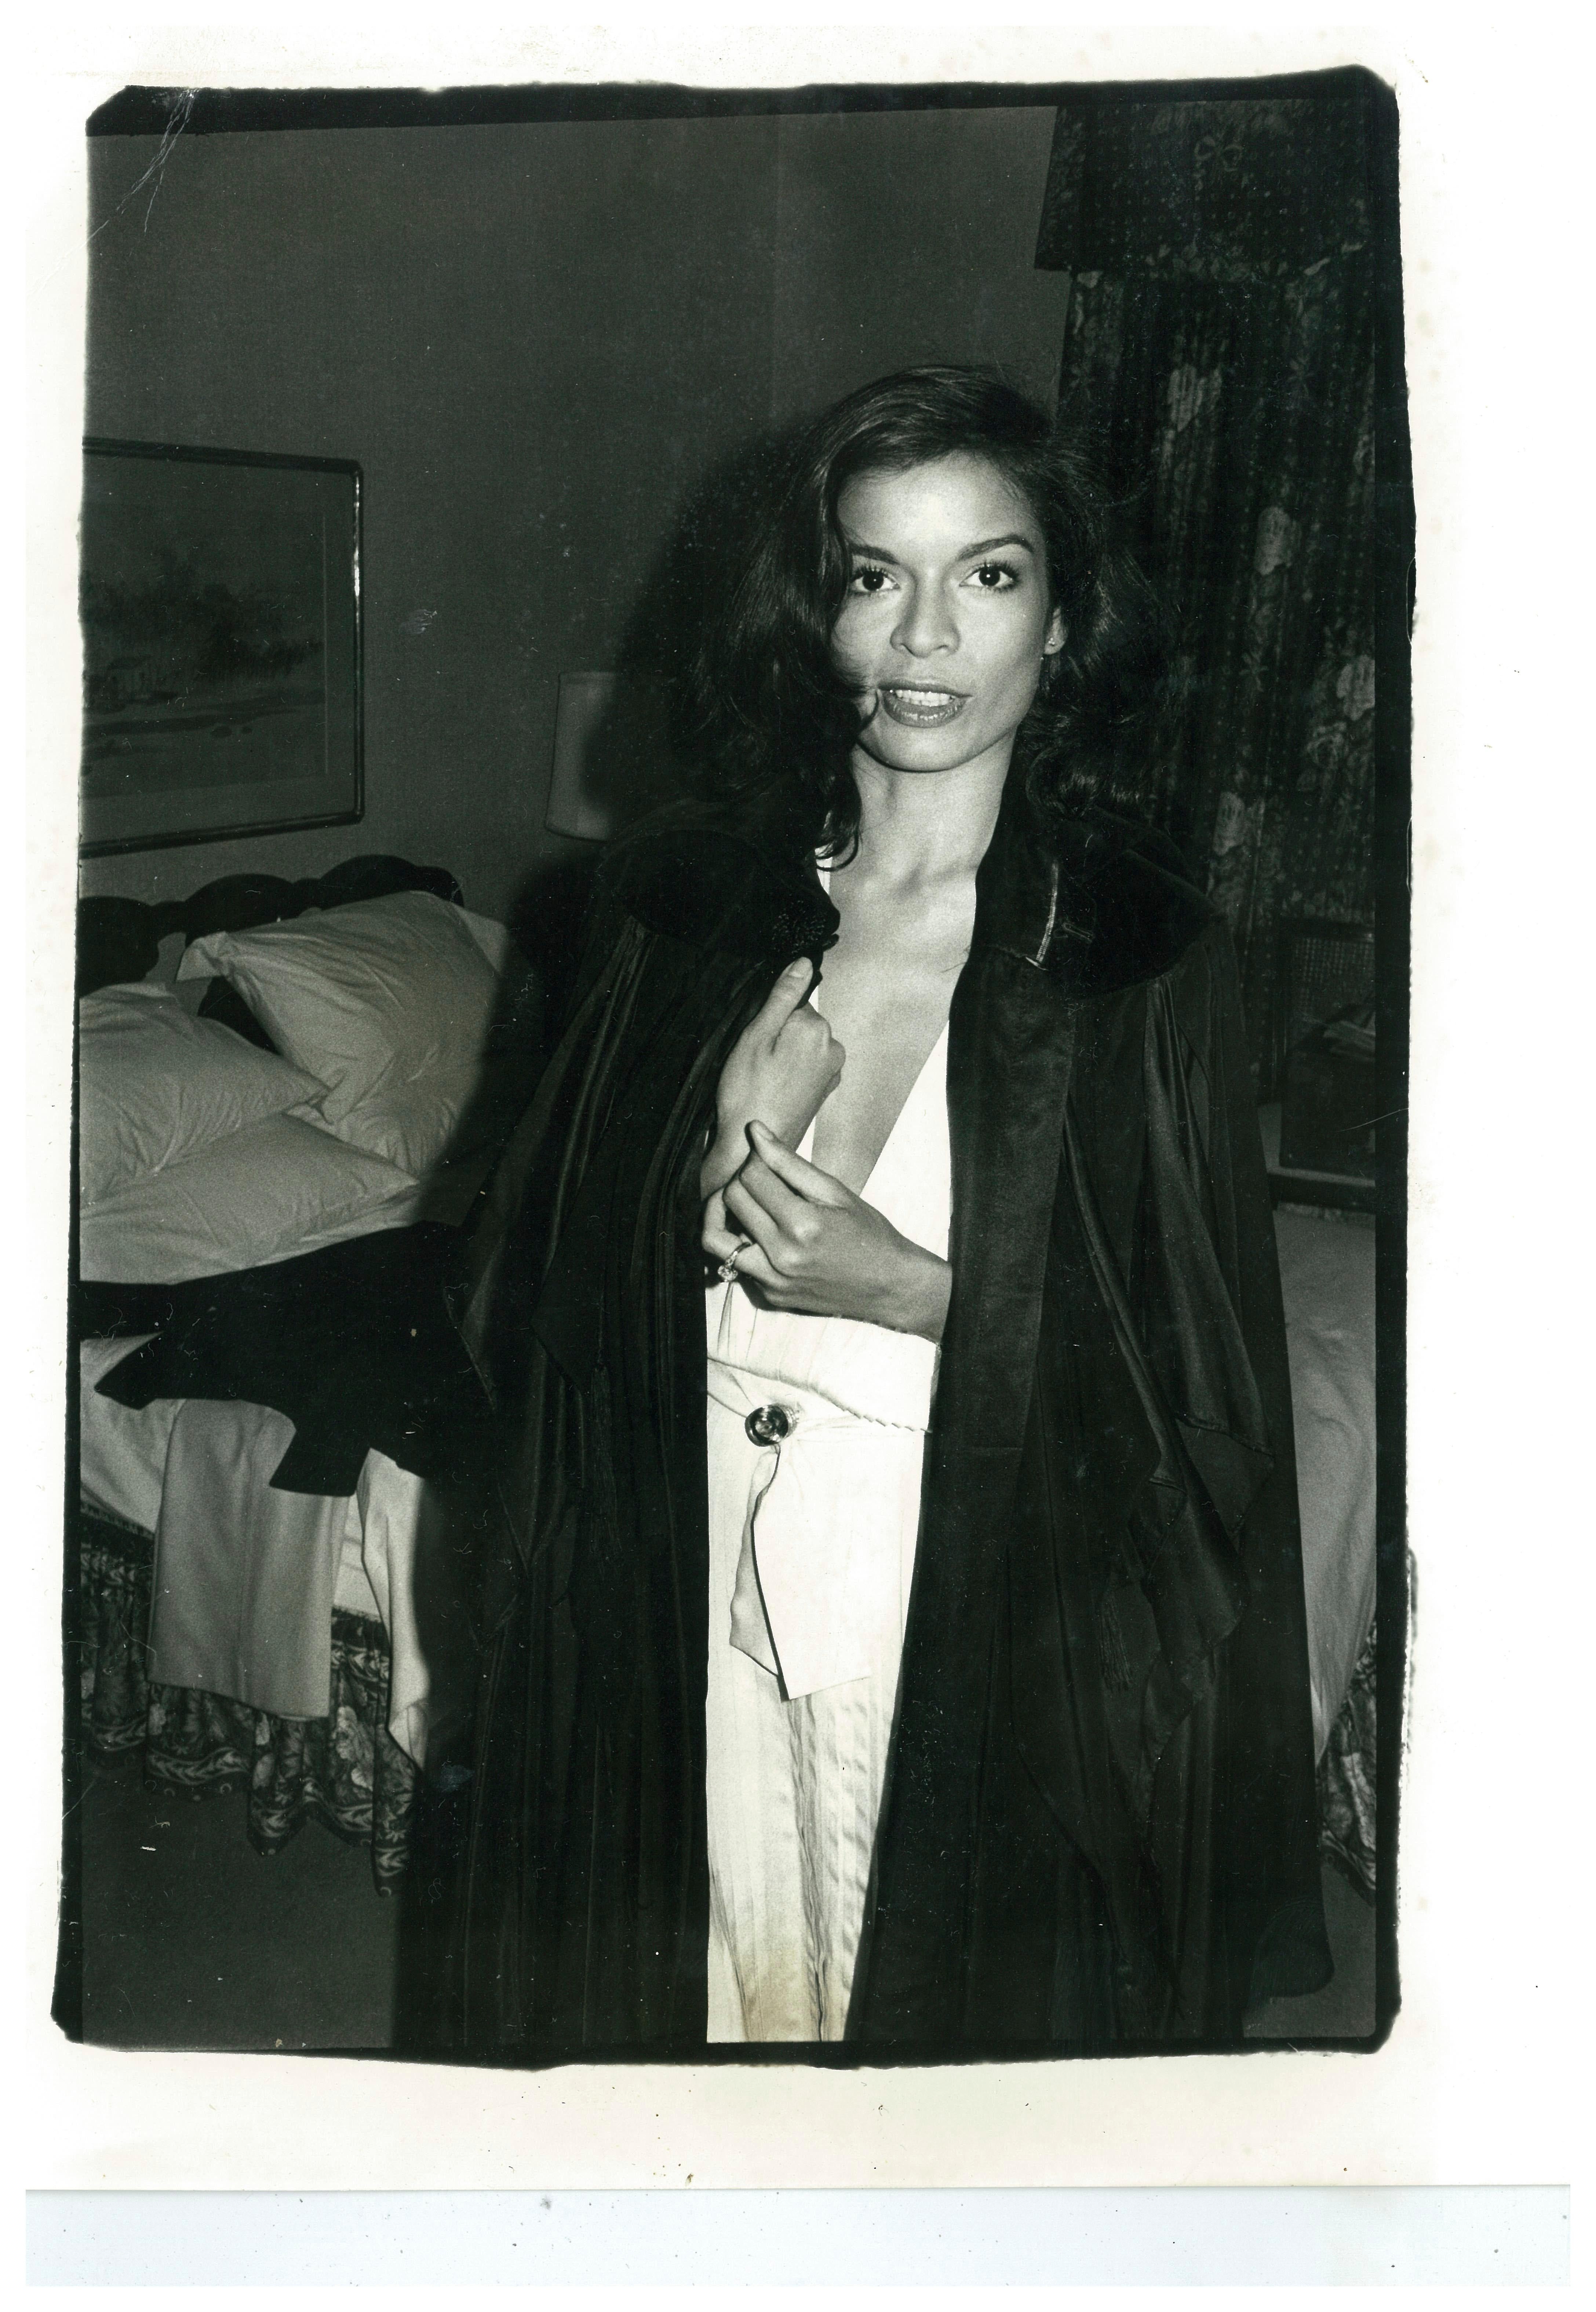 Bianca Jagger in black coat in Hotel Room